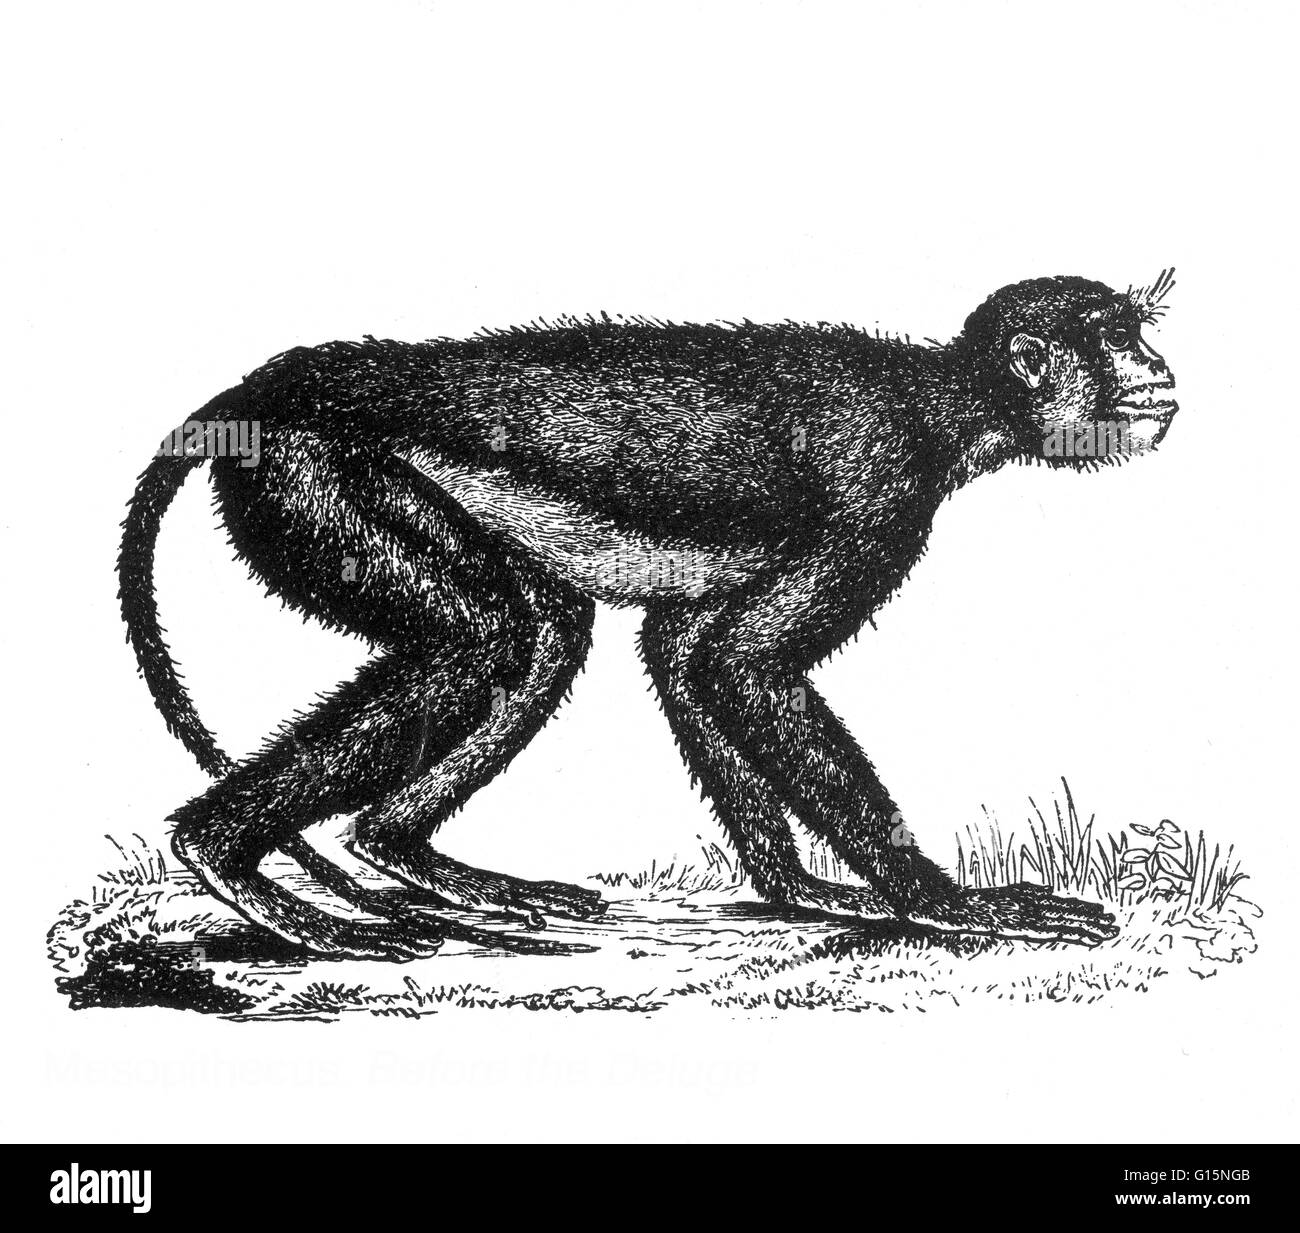 Mesopithecus è un genere estinto di scimmia del Vecchio Mondo che vivevano in Europa e Asia occidentale da 7 a 5 milioni di anni fa. Una volta si è pensato che potrebbe essere un antenato del langur grigio, ma un più recente studio suggerisce che essi sono più strettamente correlati t Foto Stock